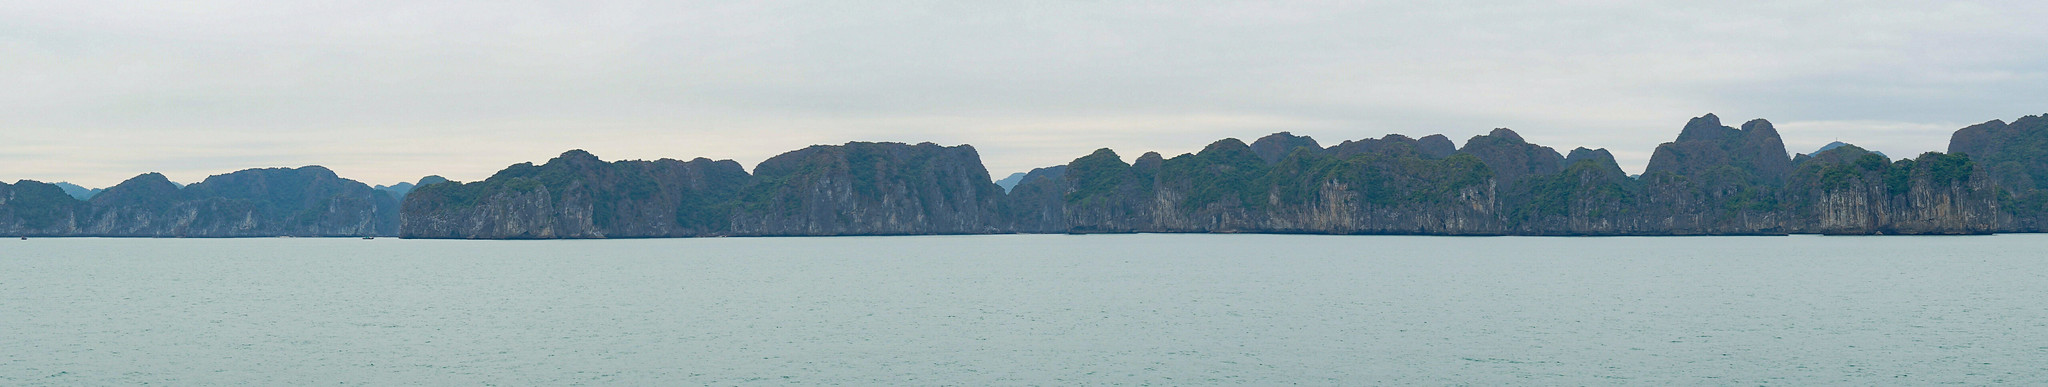 Navegando por Lan Ha y Halong, la bahía de los gigantes de piedra - VIETNAM, TIERRA DE DRAGONES (26)